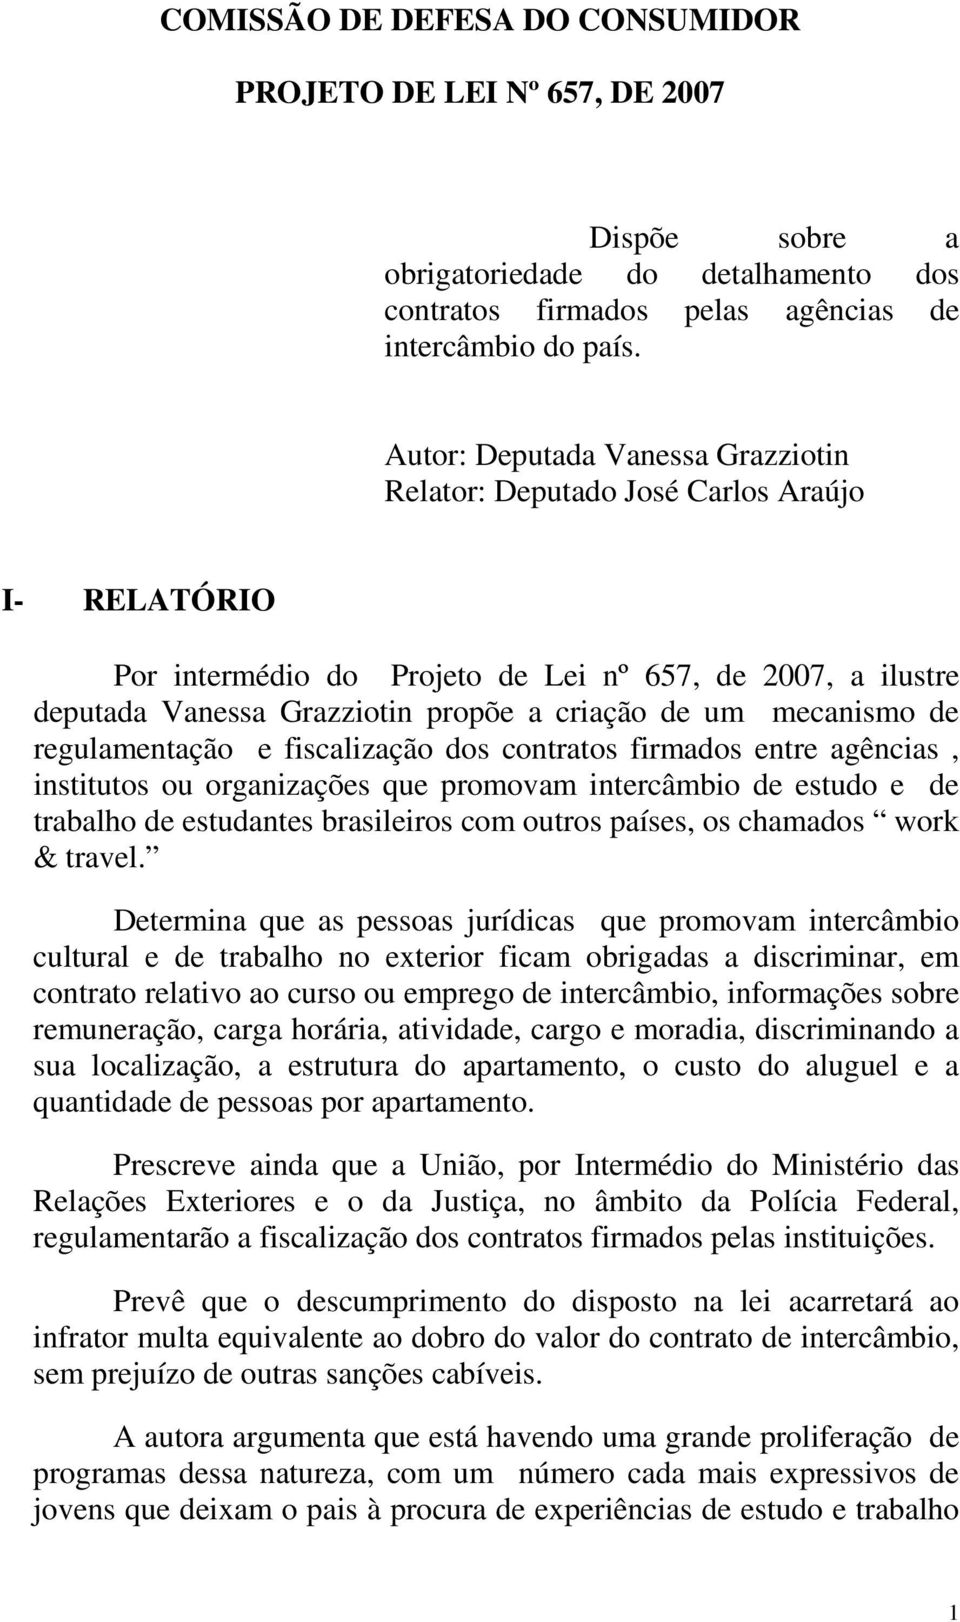 mecanismo de regulamentação e fiscalização dos contratos firmados entre agências, institutos ou organizações que promovam intercâmbio de estudo e de trabalho de estudantes brasileiros com outros